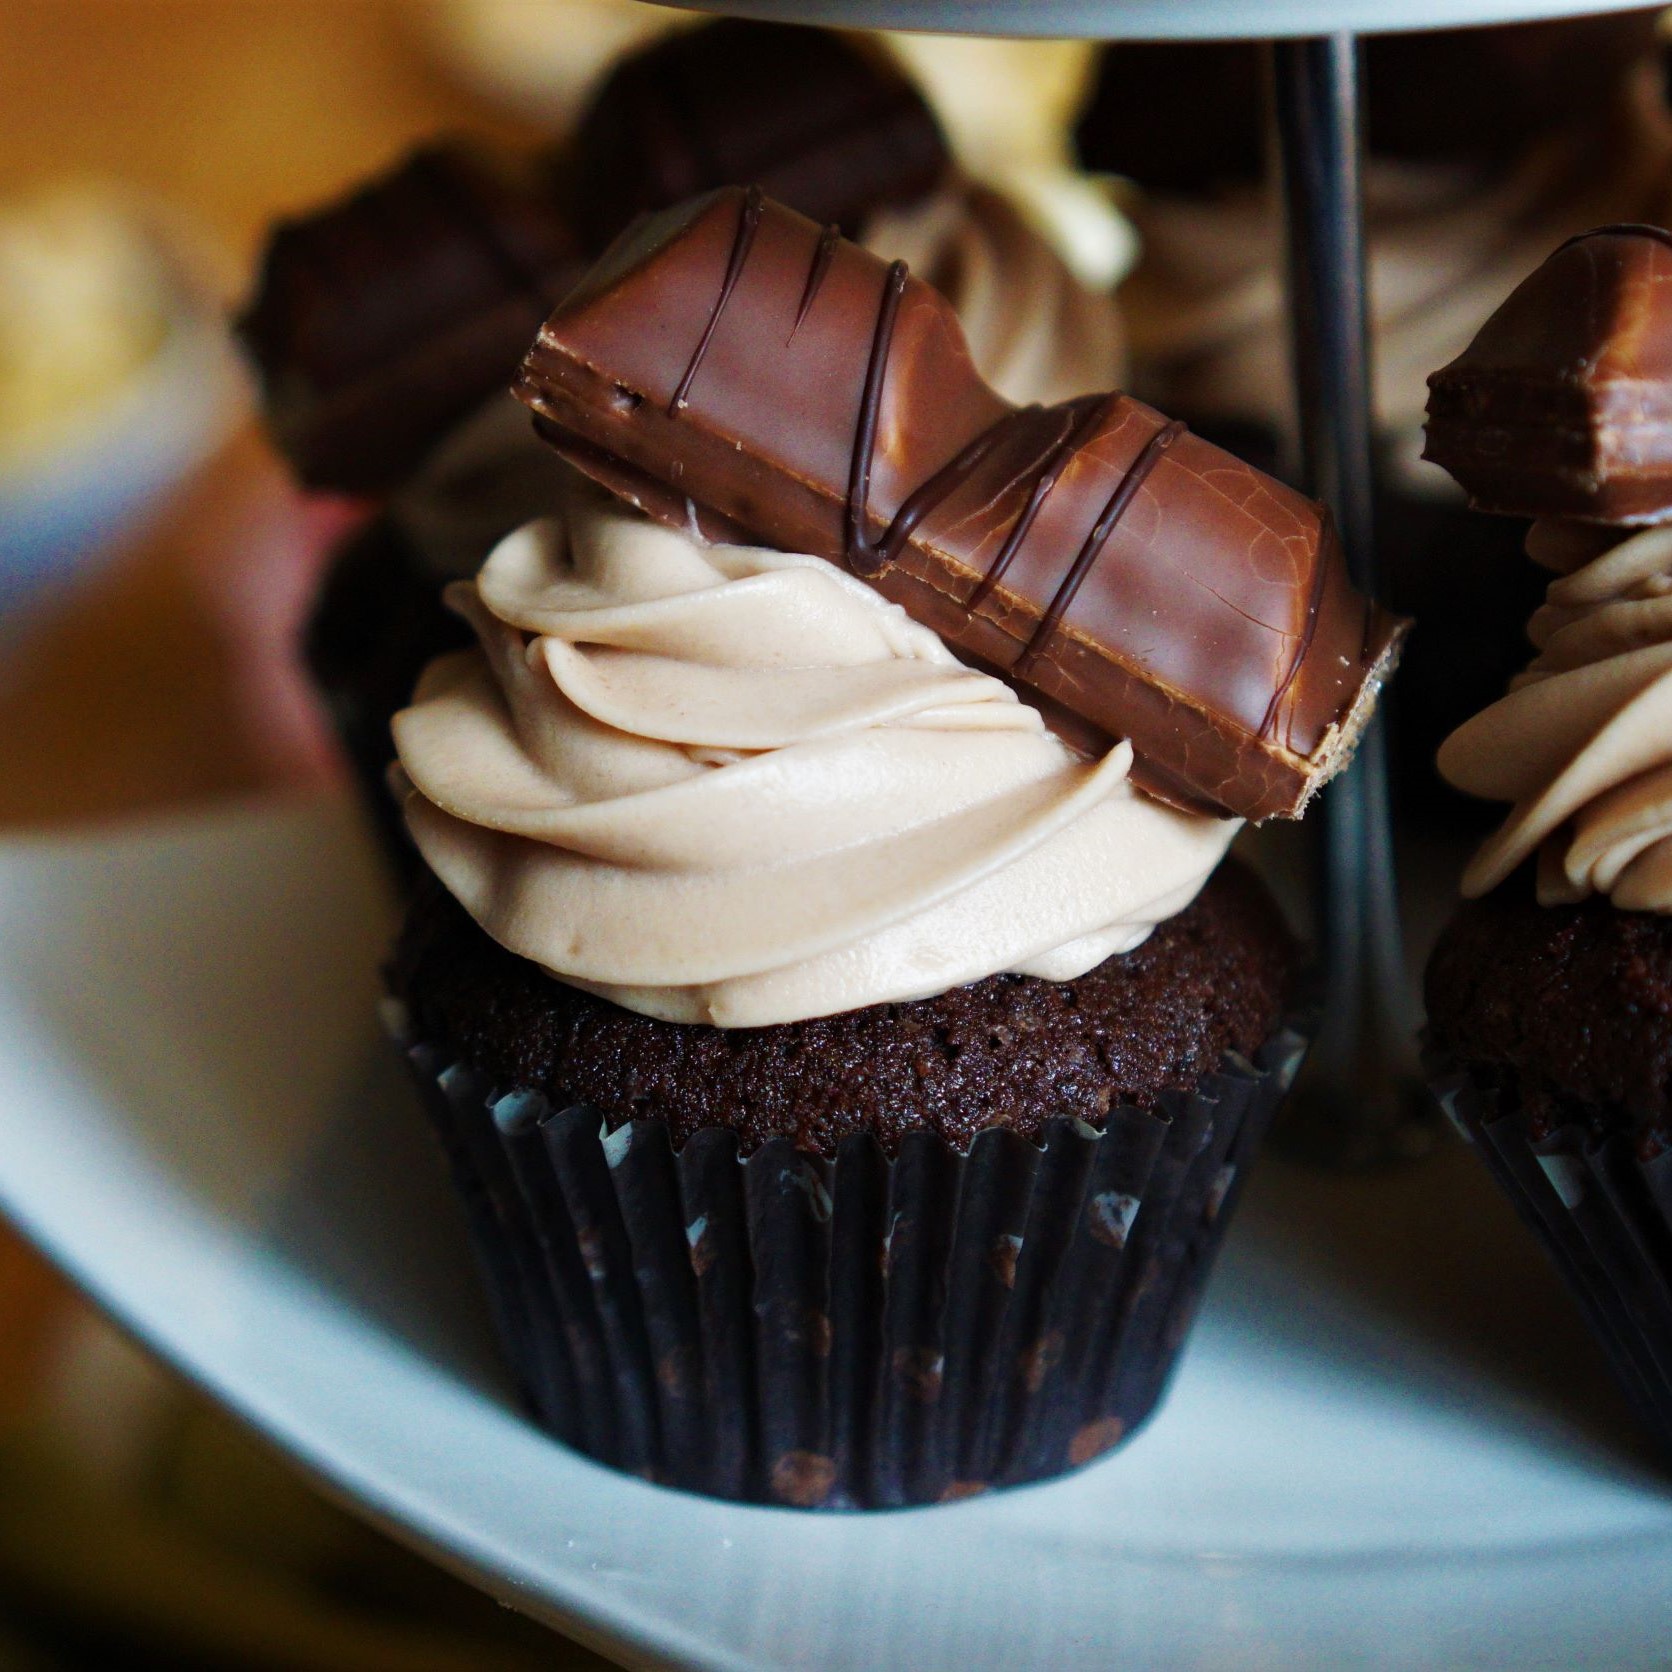 Biely keramický etažér s cupcakes kakaového cesta a krému z kinder čokolády dozdobené tyčinkou kinder bueno v pozadí drevený stôl